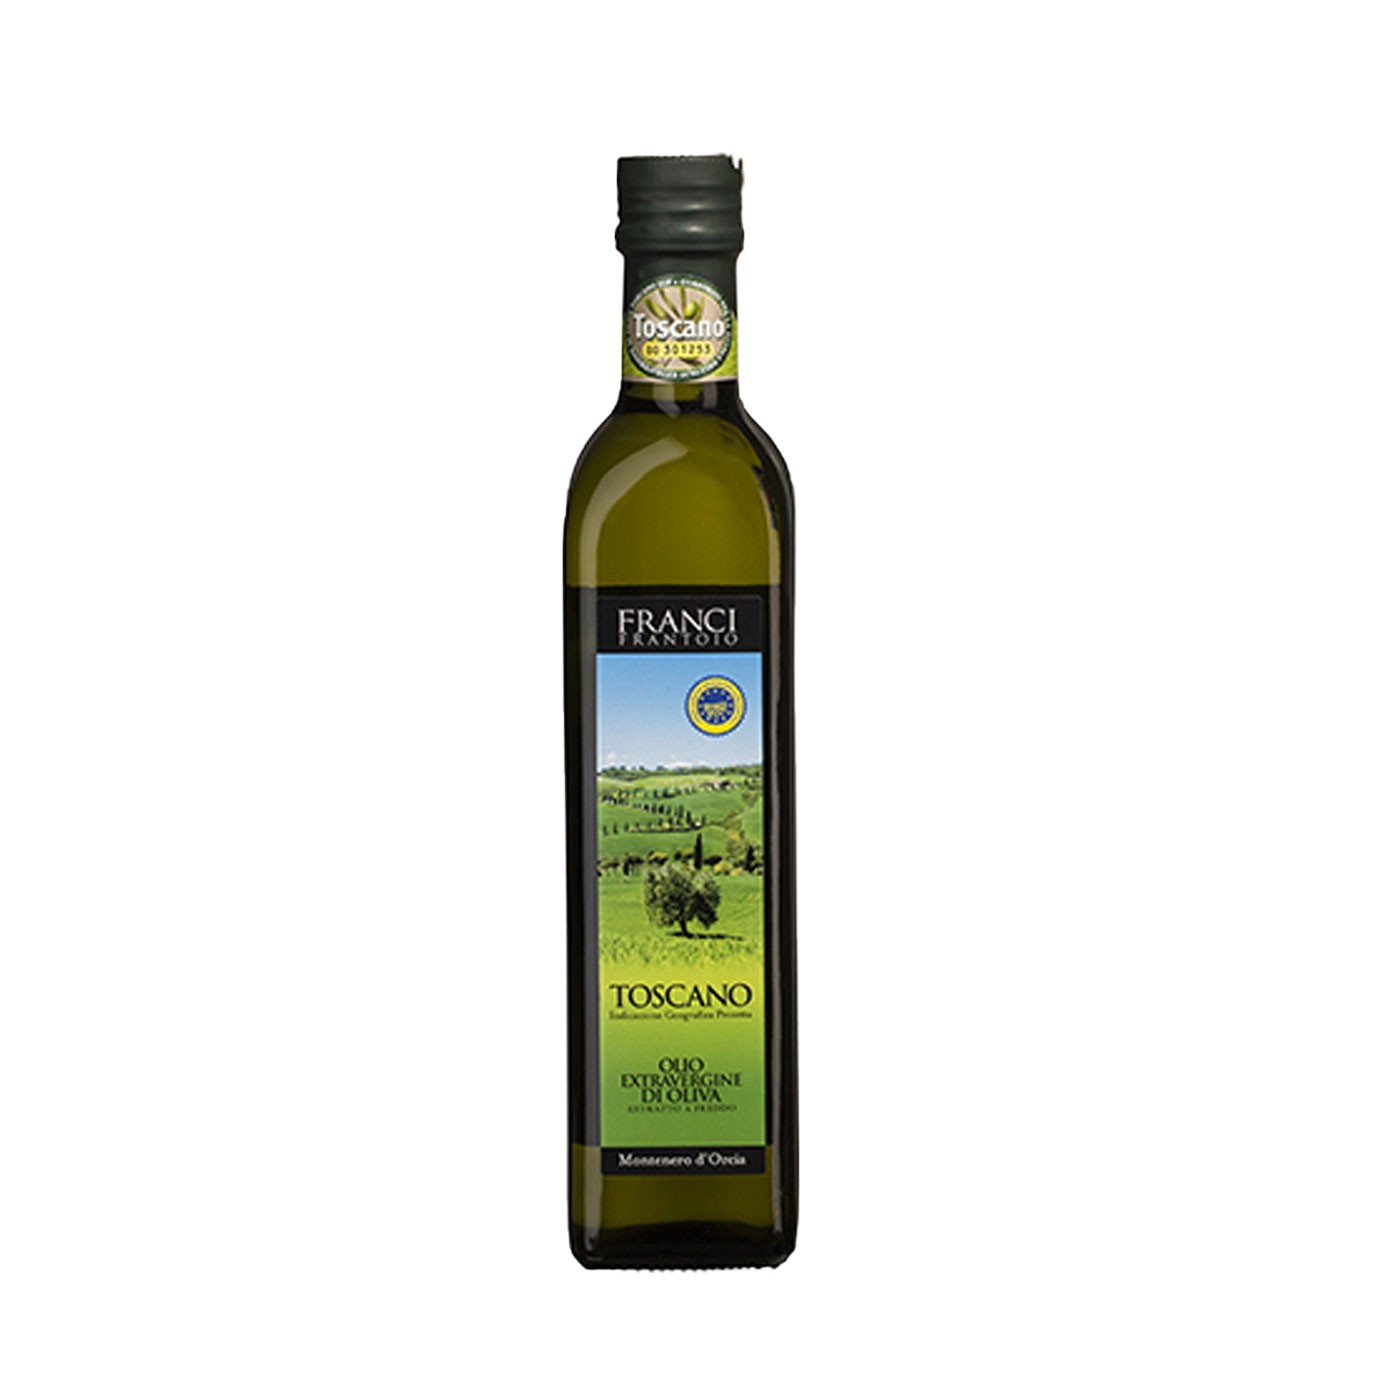 Toscano Franci IGP Extra Virgin Olive Oil 16.9 oz